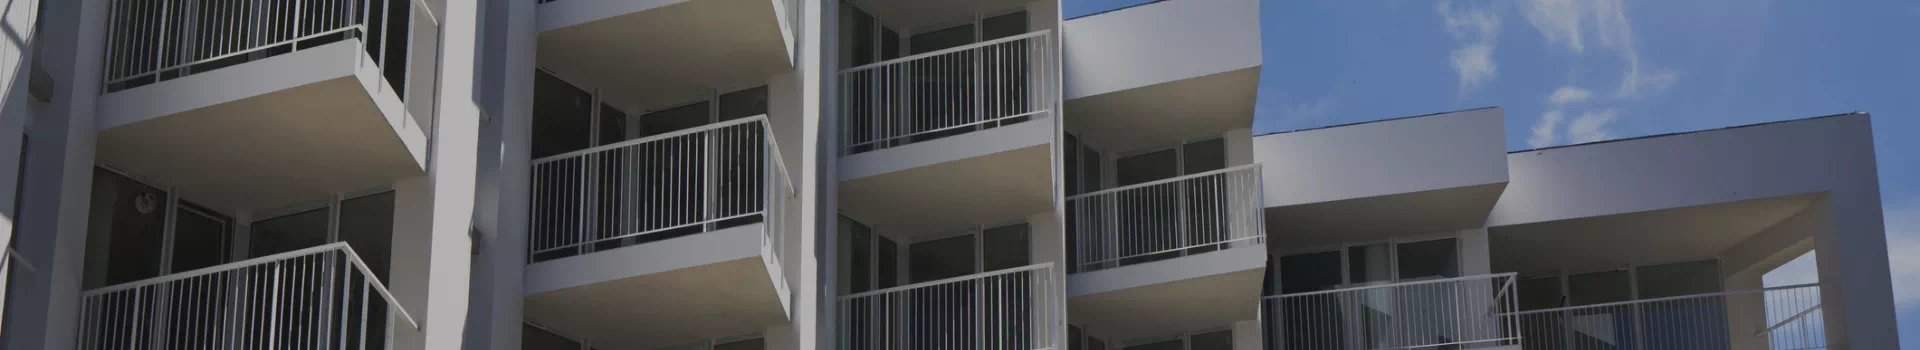 Balkony w bloku mieszkalnym